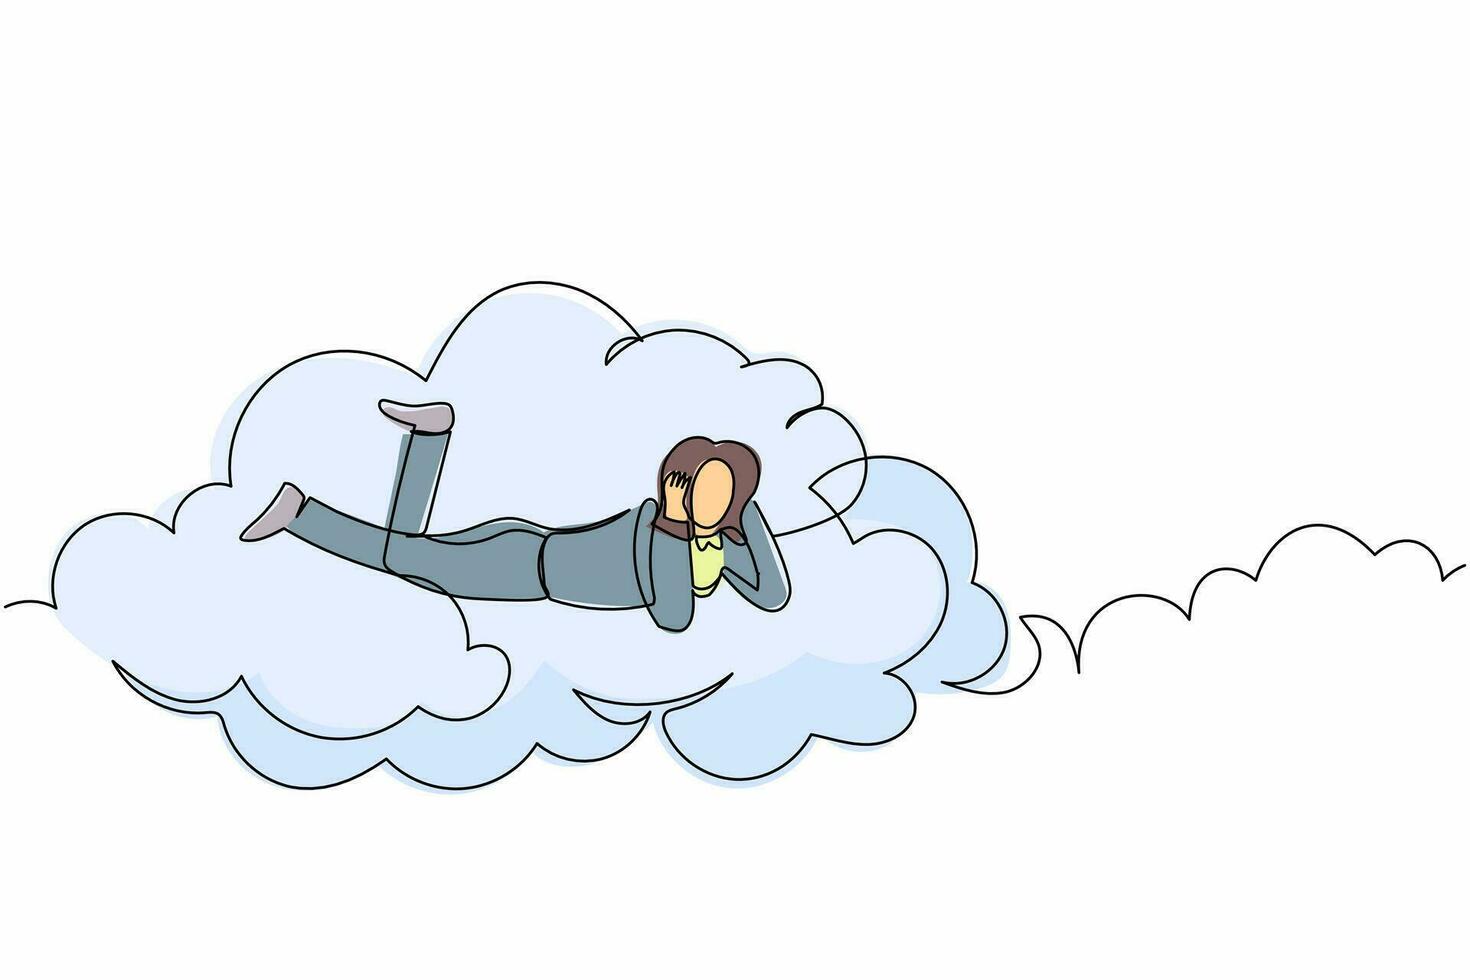 kontinuierliche einzeilige zeichnung träumer geschäftsfrau lag auf den wolken und träumte oder dachte über ein neues geschäftsprojekt nach. Frau ruht sich nach der Arbeit aus. einzeiliges zeichnen design vektorgrafik illustration vektor